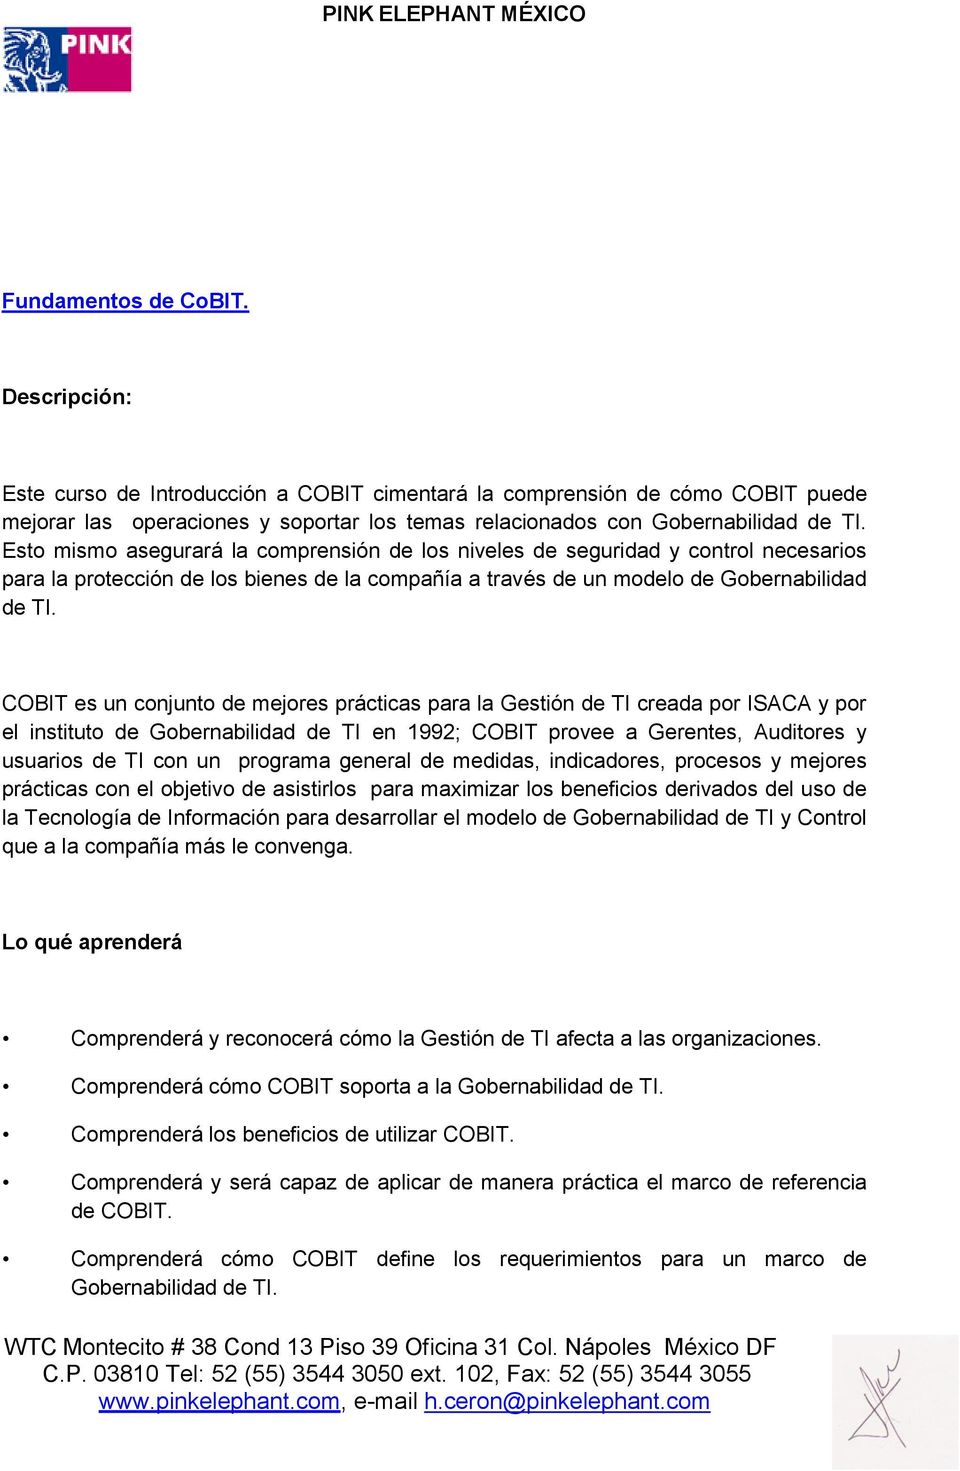 COBIT es un conjunto de mejores prácticas para la Gestión de TI creada por ISACA y por el instituto de Gobernabilidad de TI en 1992; COBIT provee a Gerentes, Auditores y usuarios de TI con un